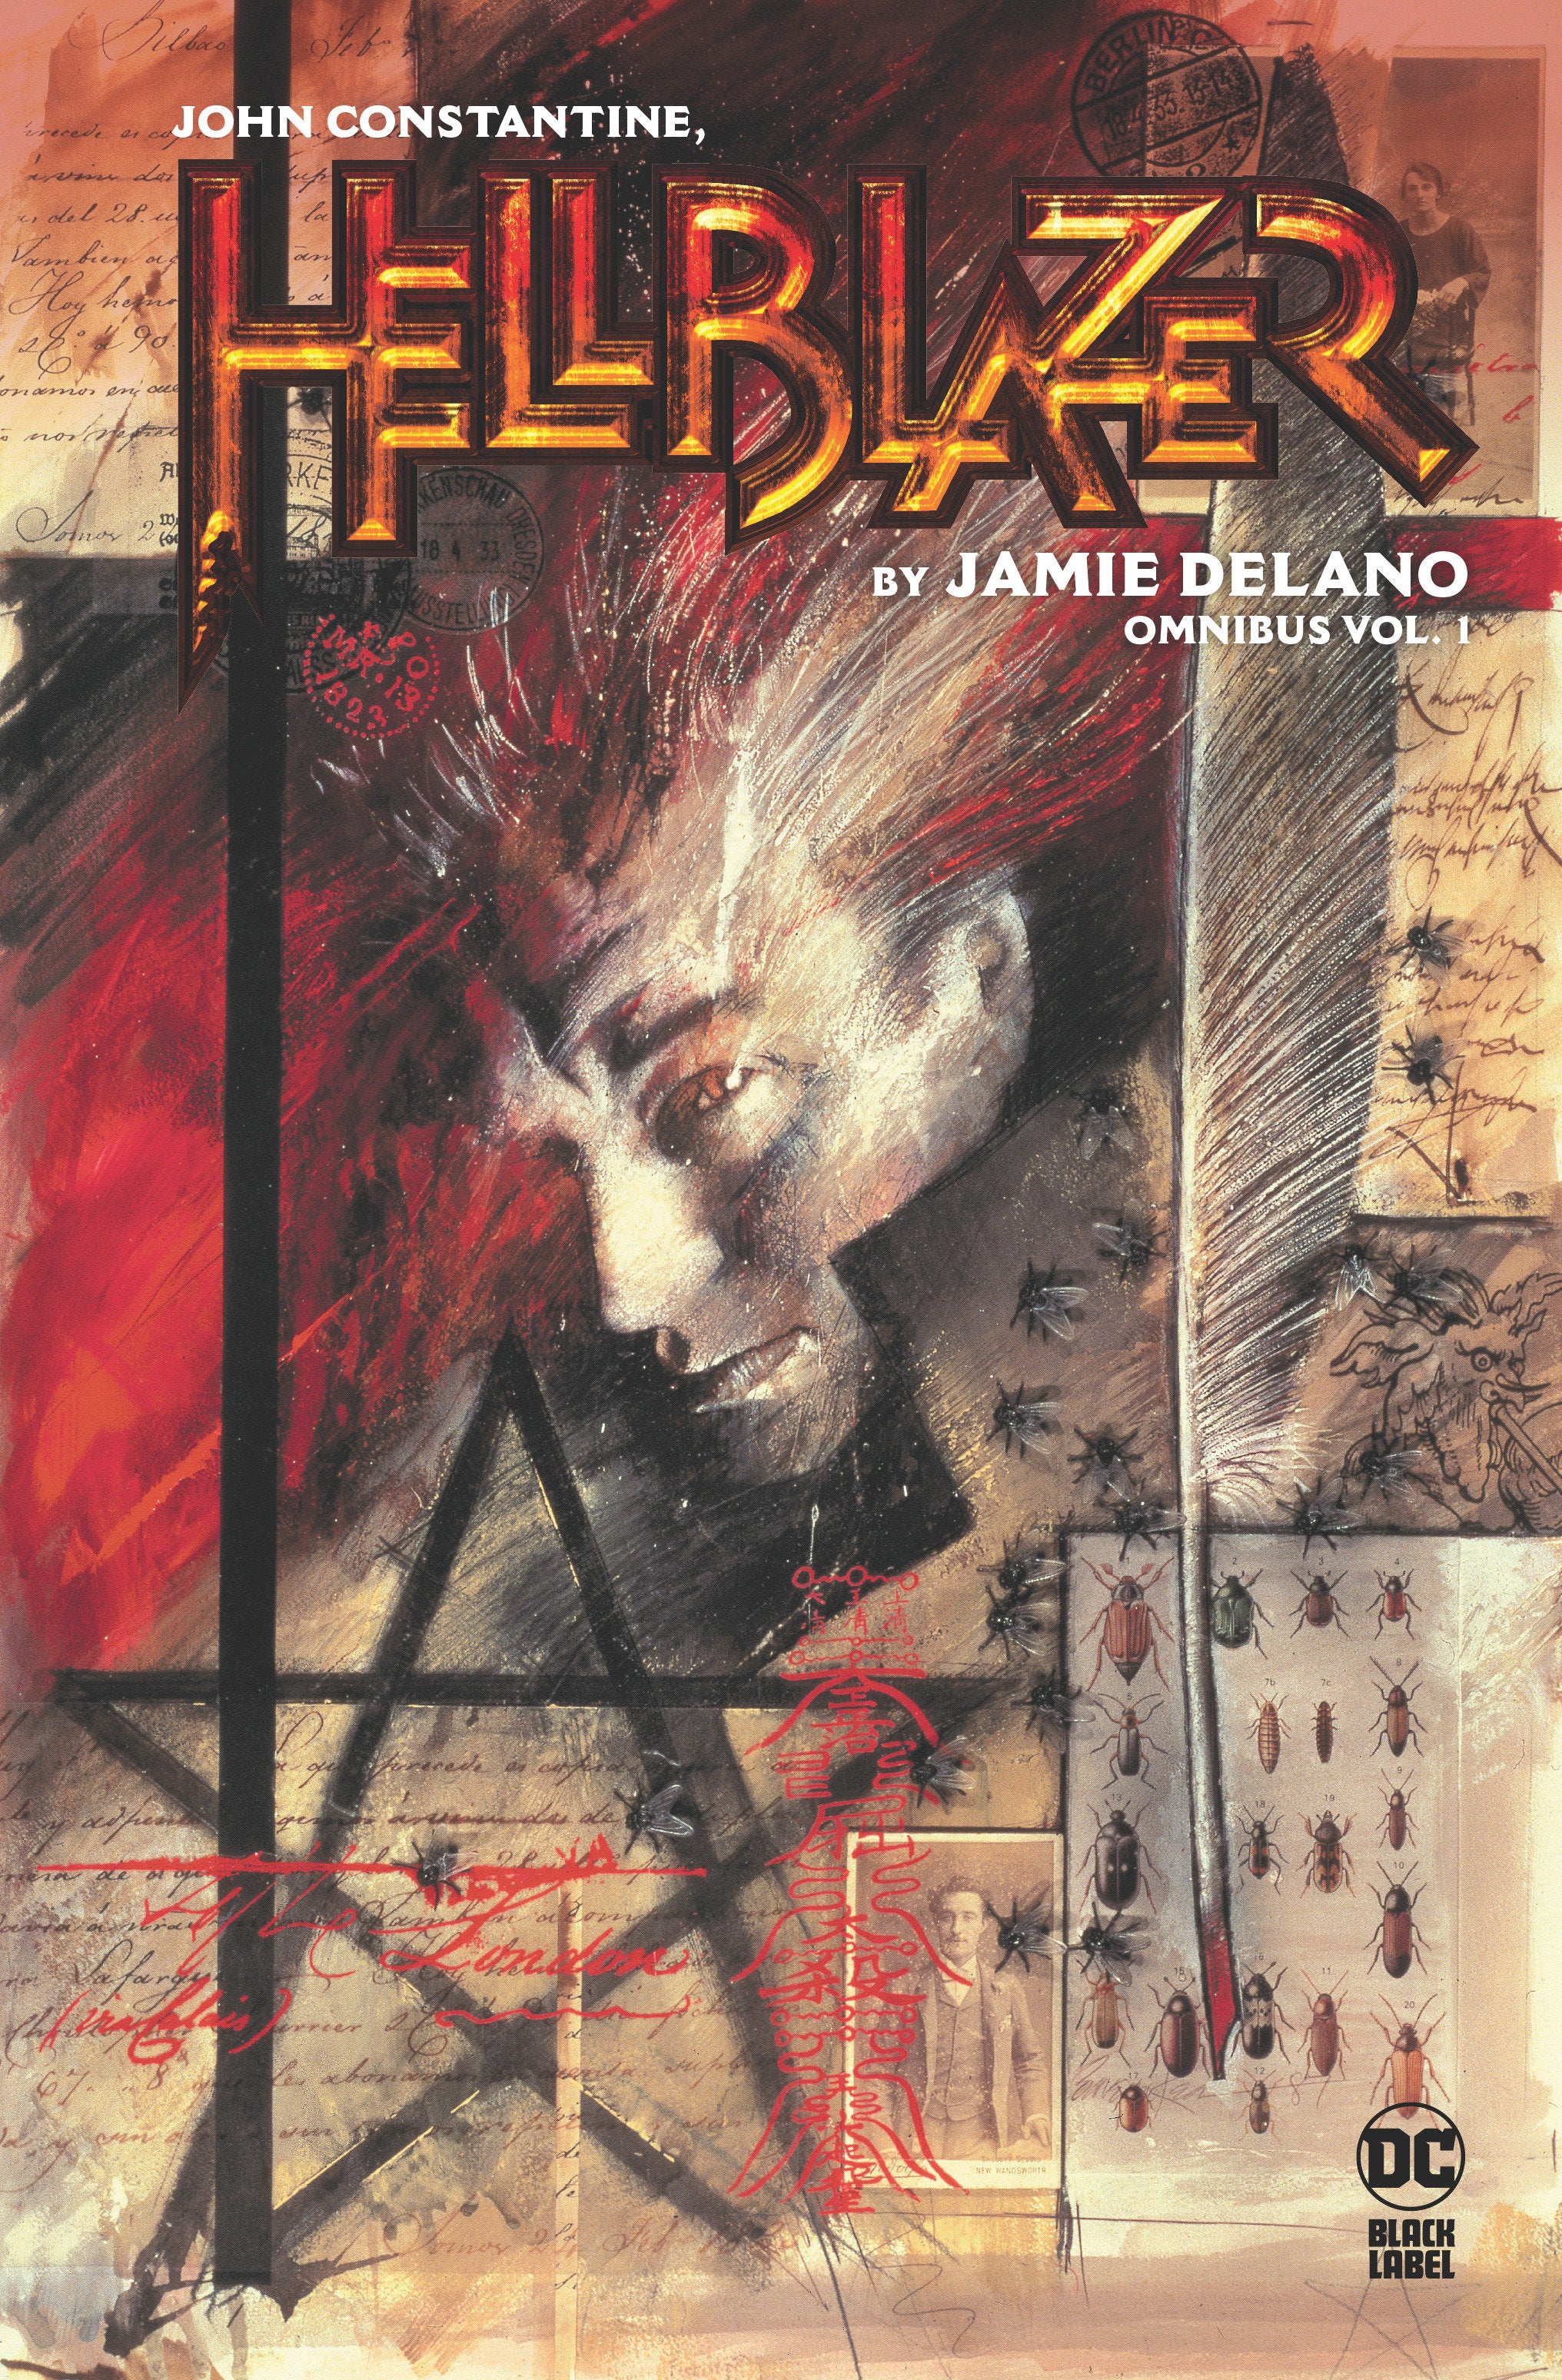 John Constantine, Hellblazer By Jamie Delano Omnibus Volume. 1 | BD Cosmos